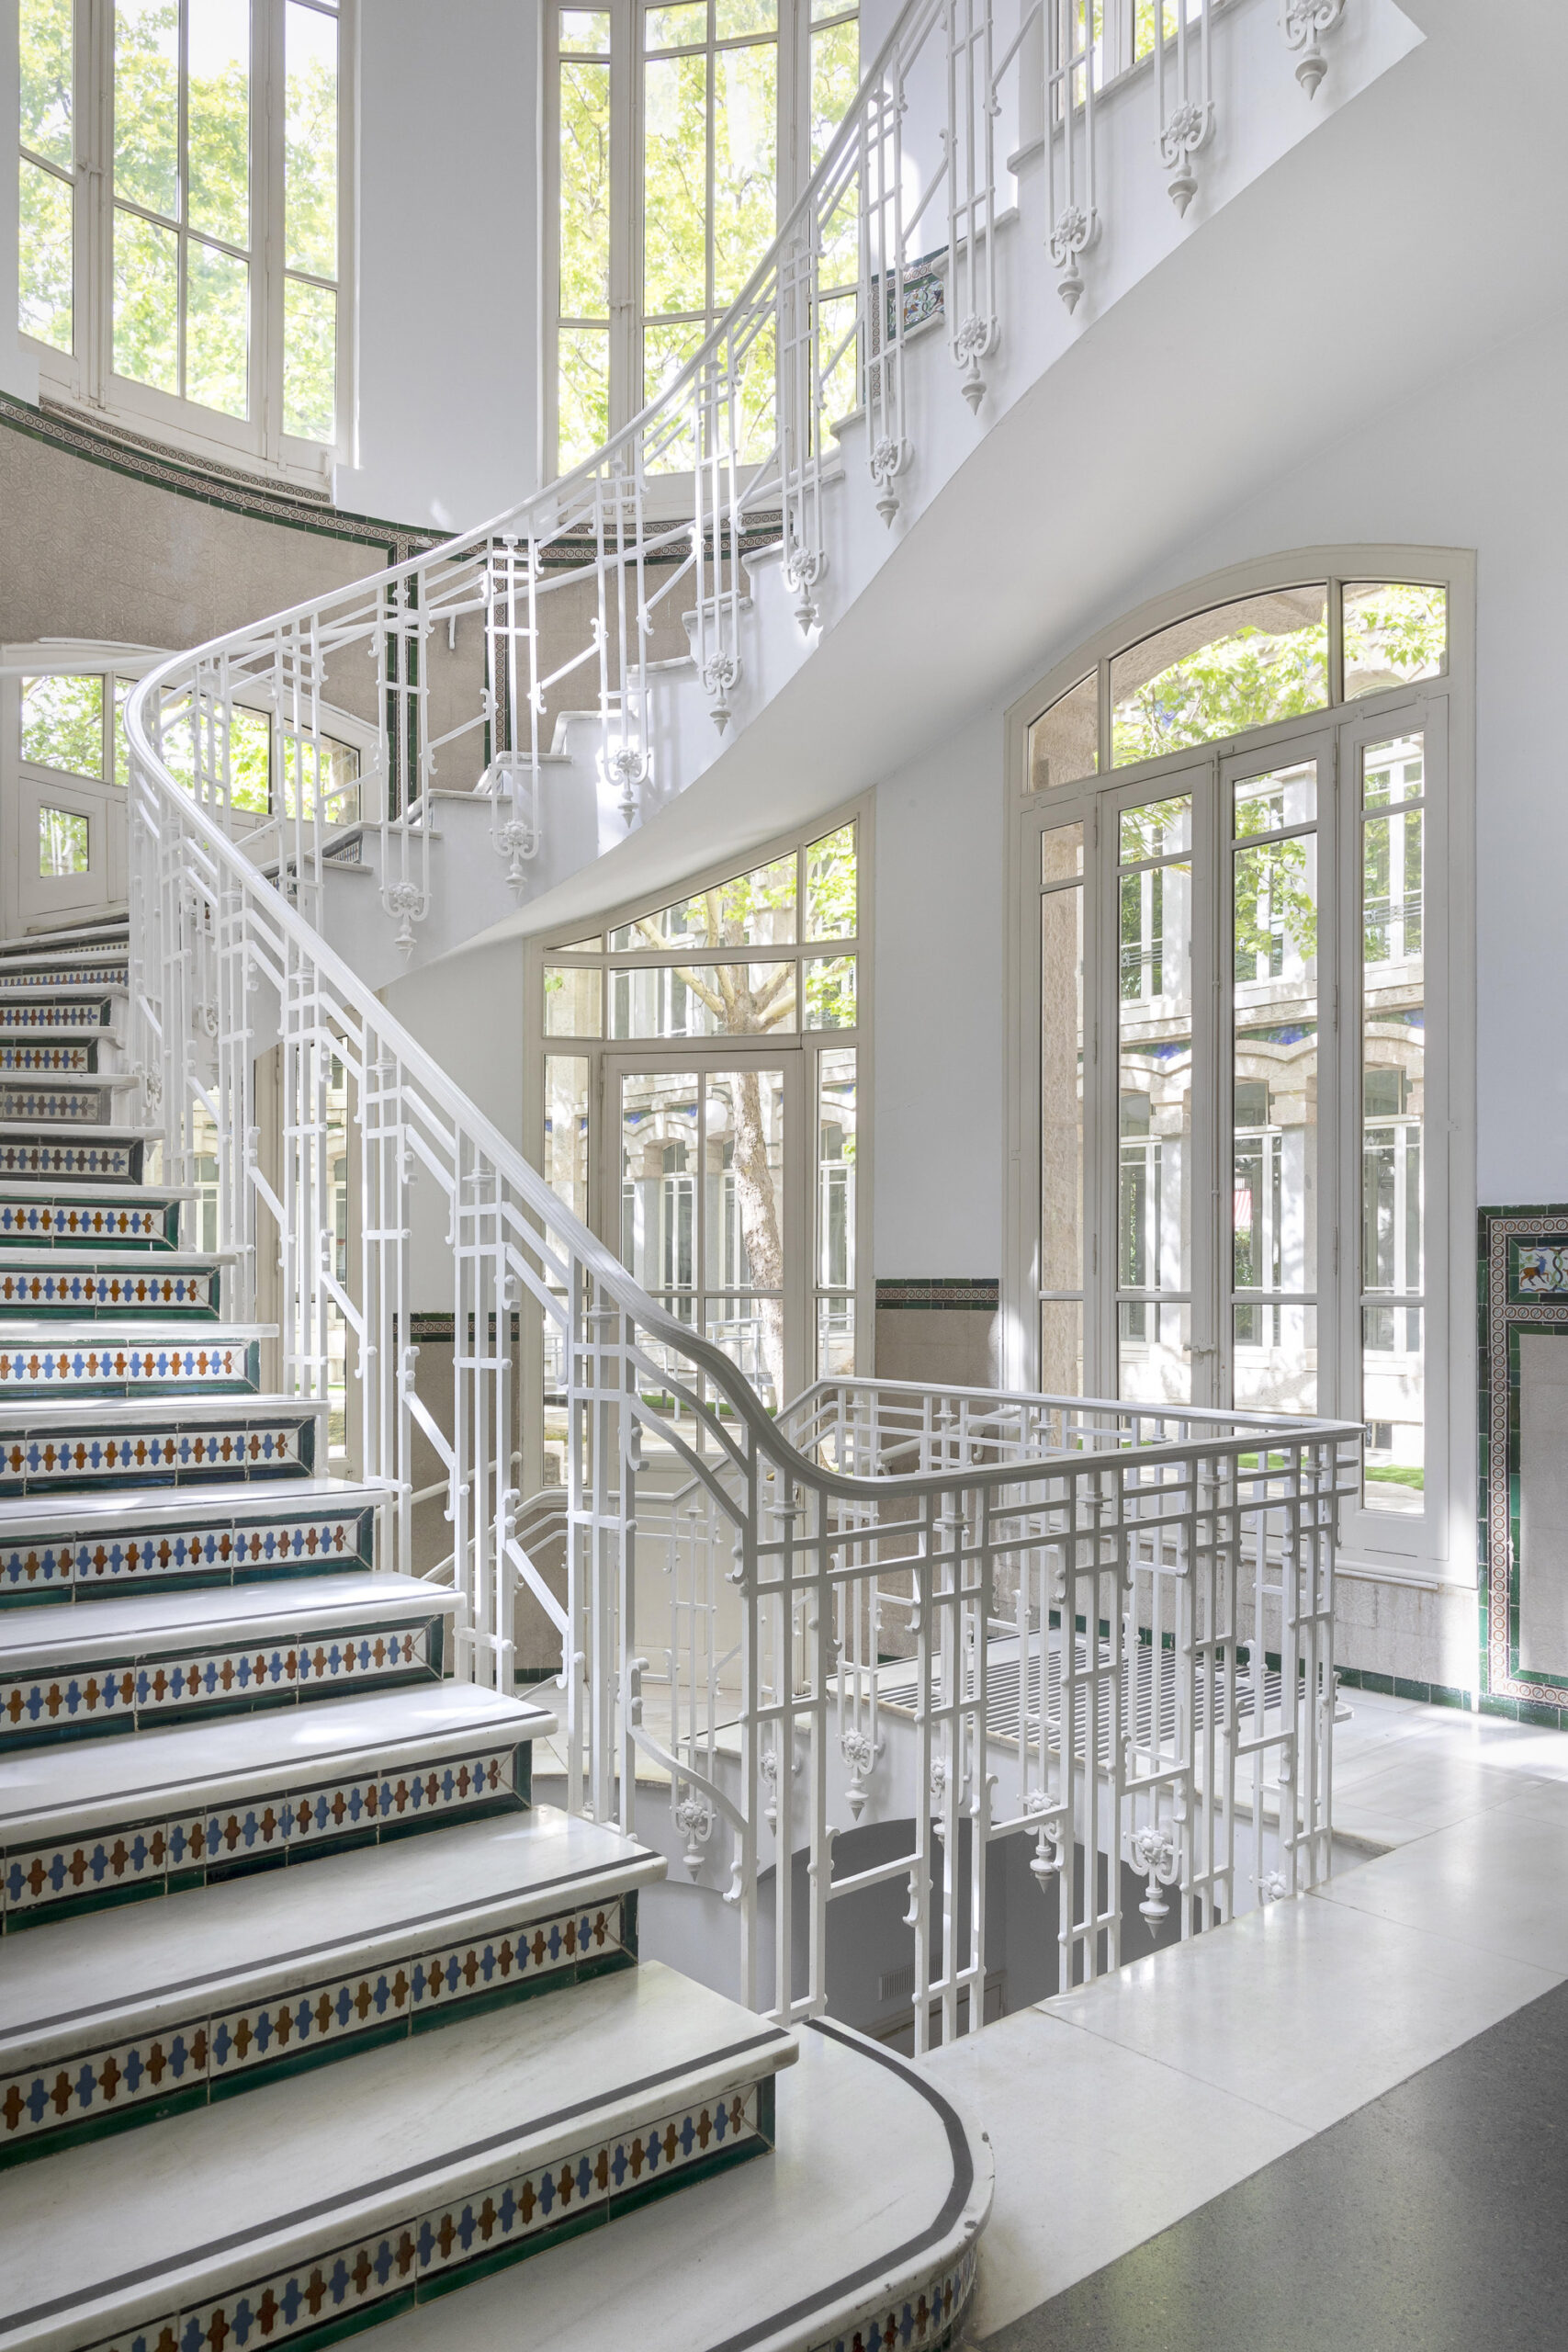 Fotografía de las escaleras de comunicación interior con decoración de azulejos.